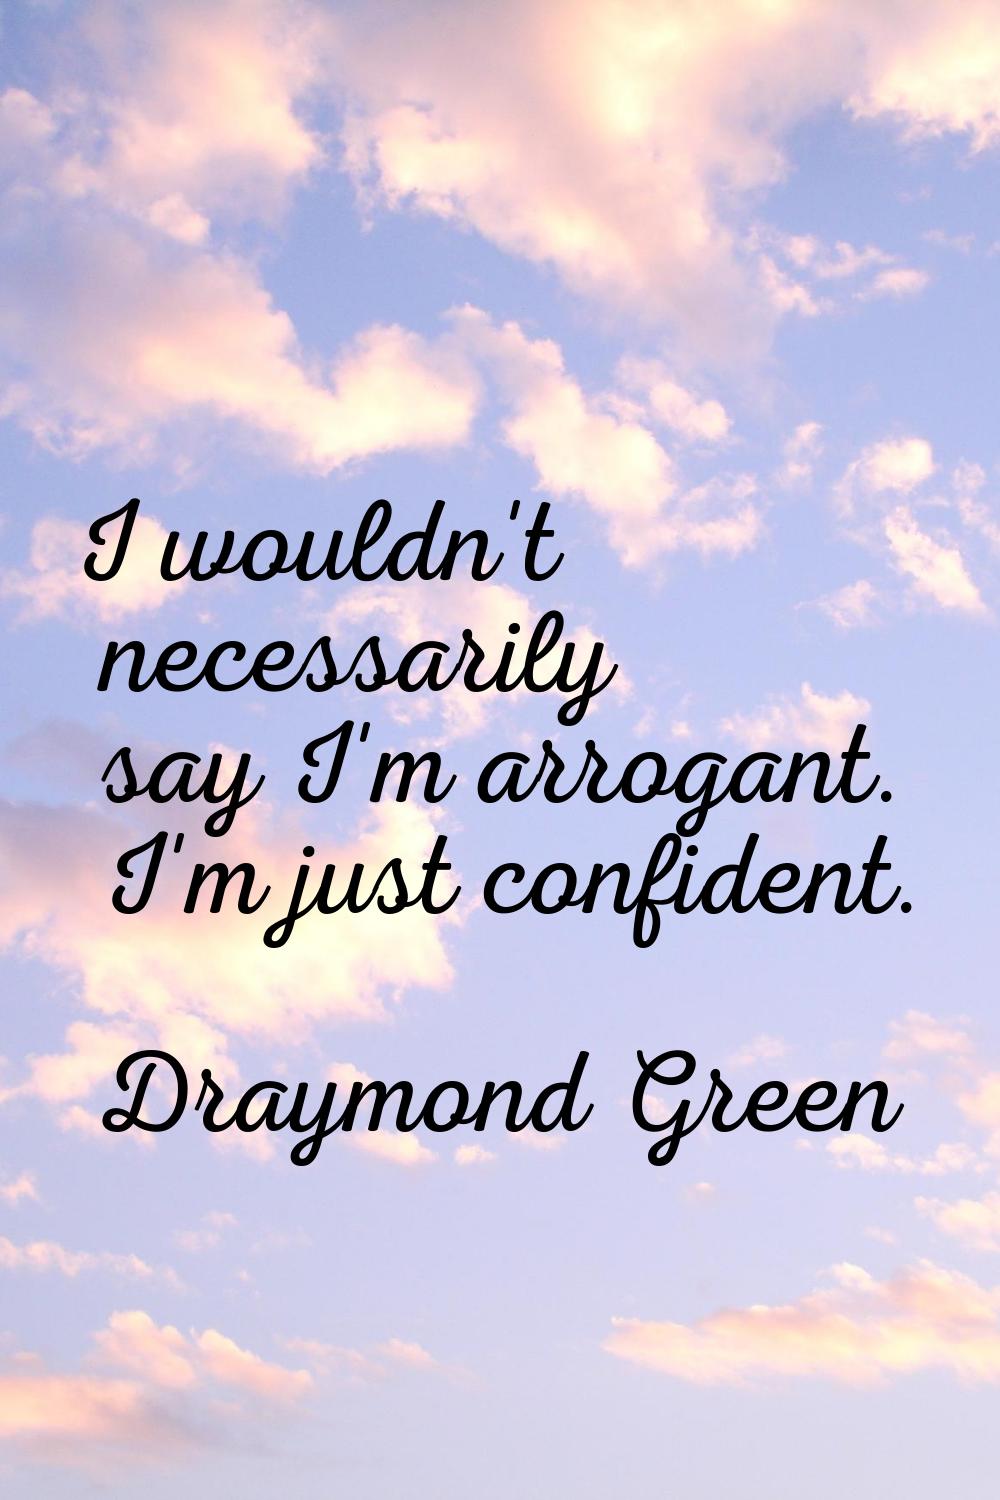 I wouldn't necessarily say I'm arrogant. I'm just confident.